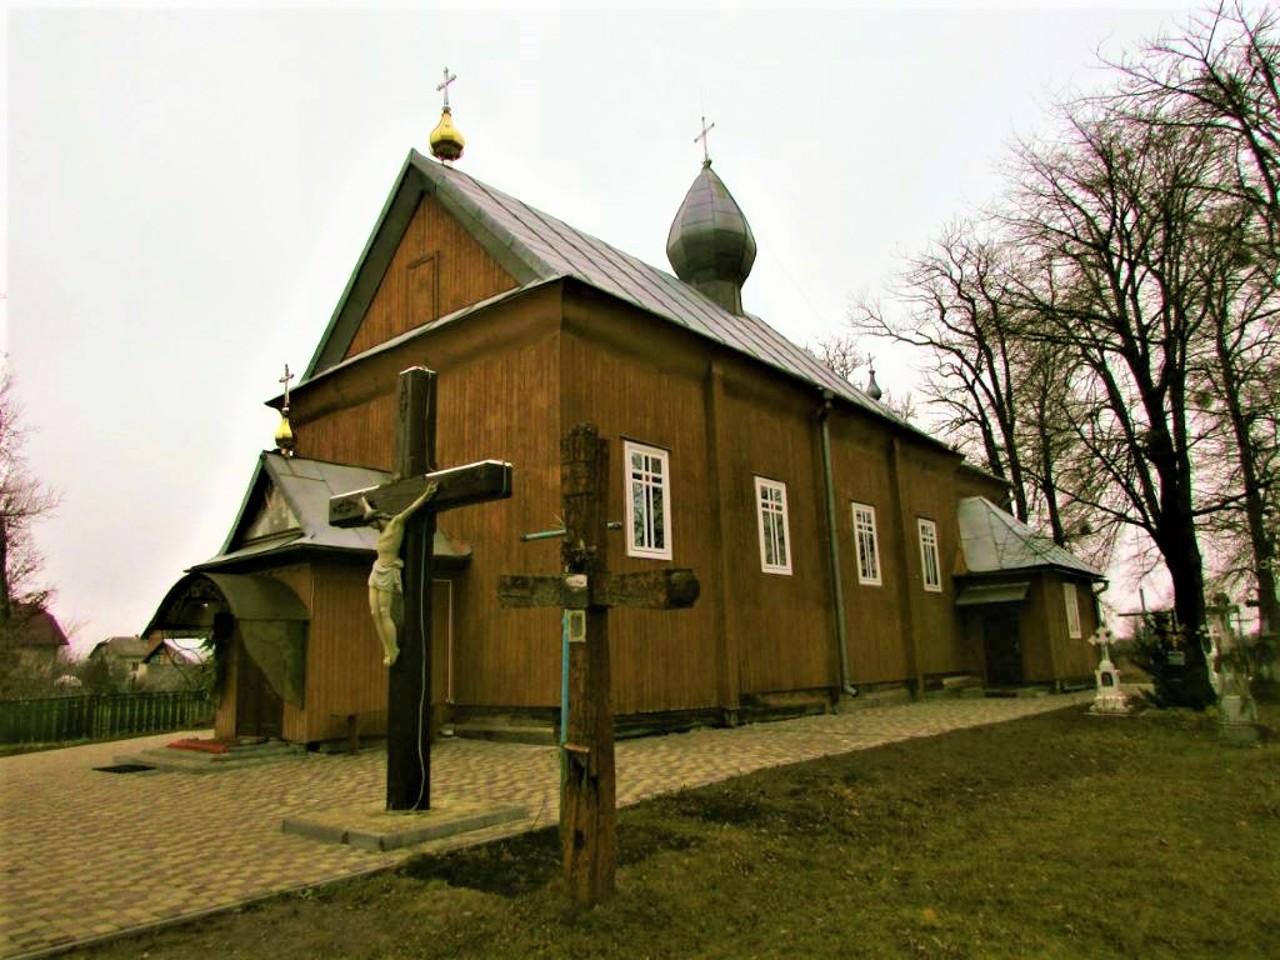 Volia-Zaderevatska village